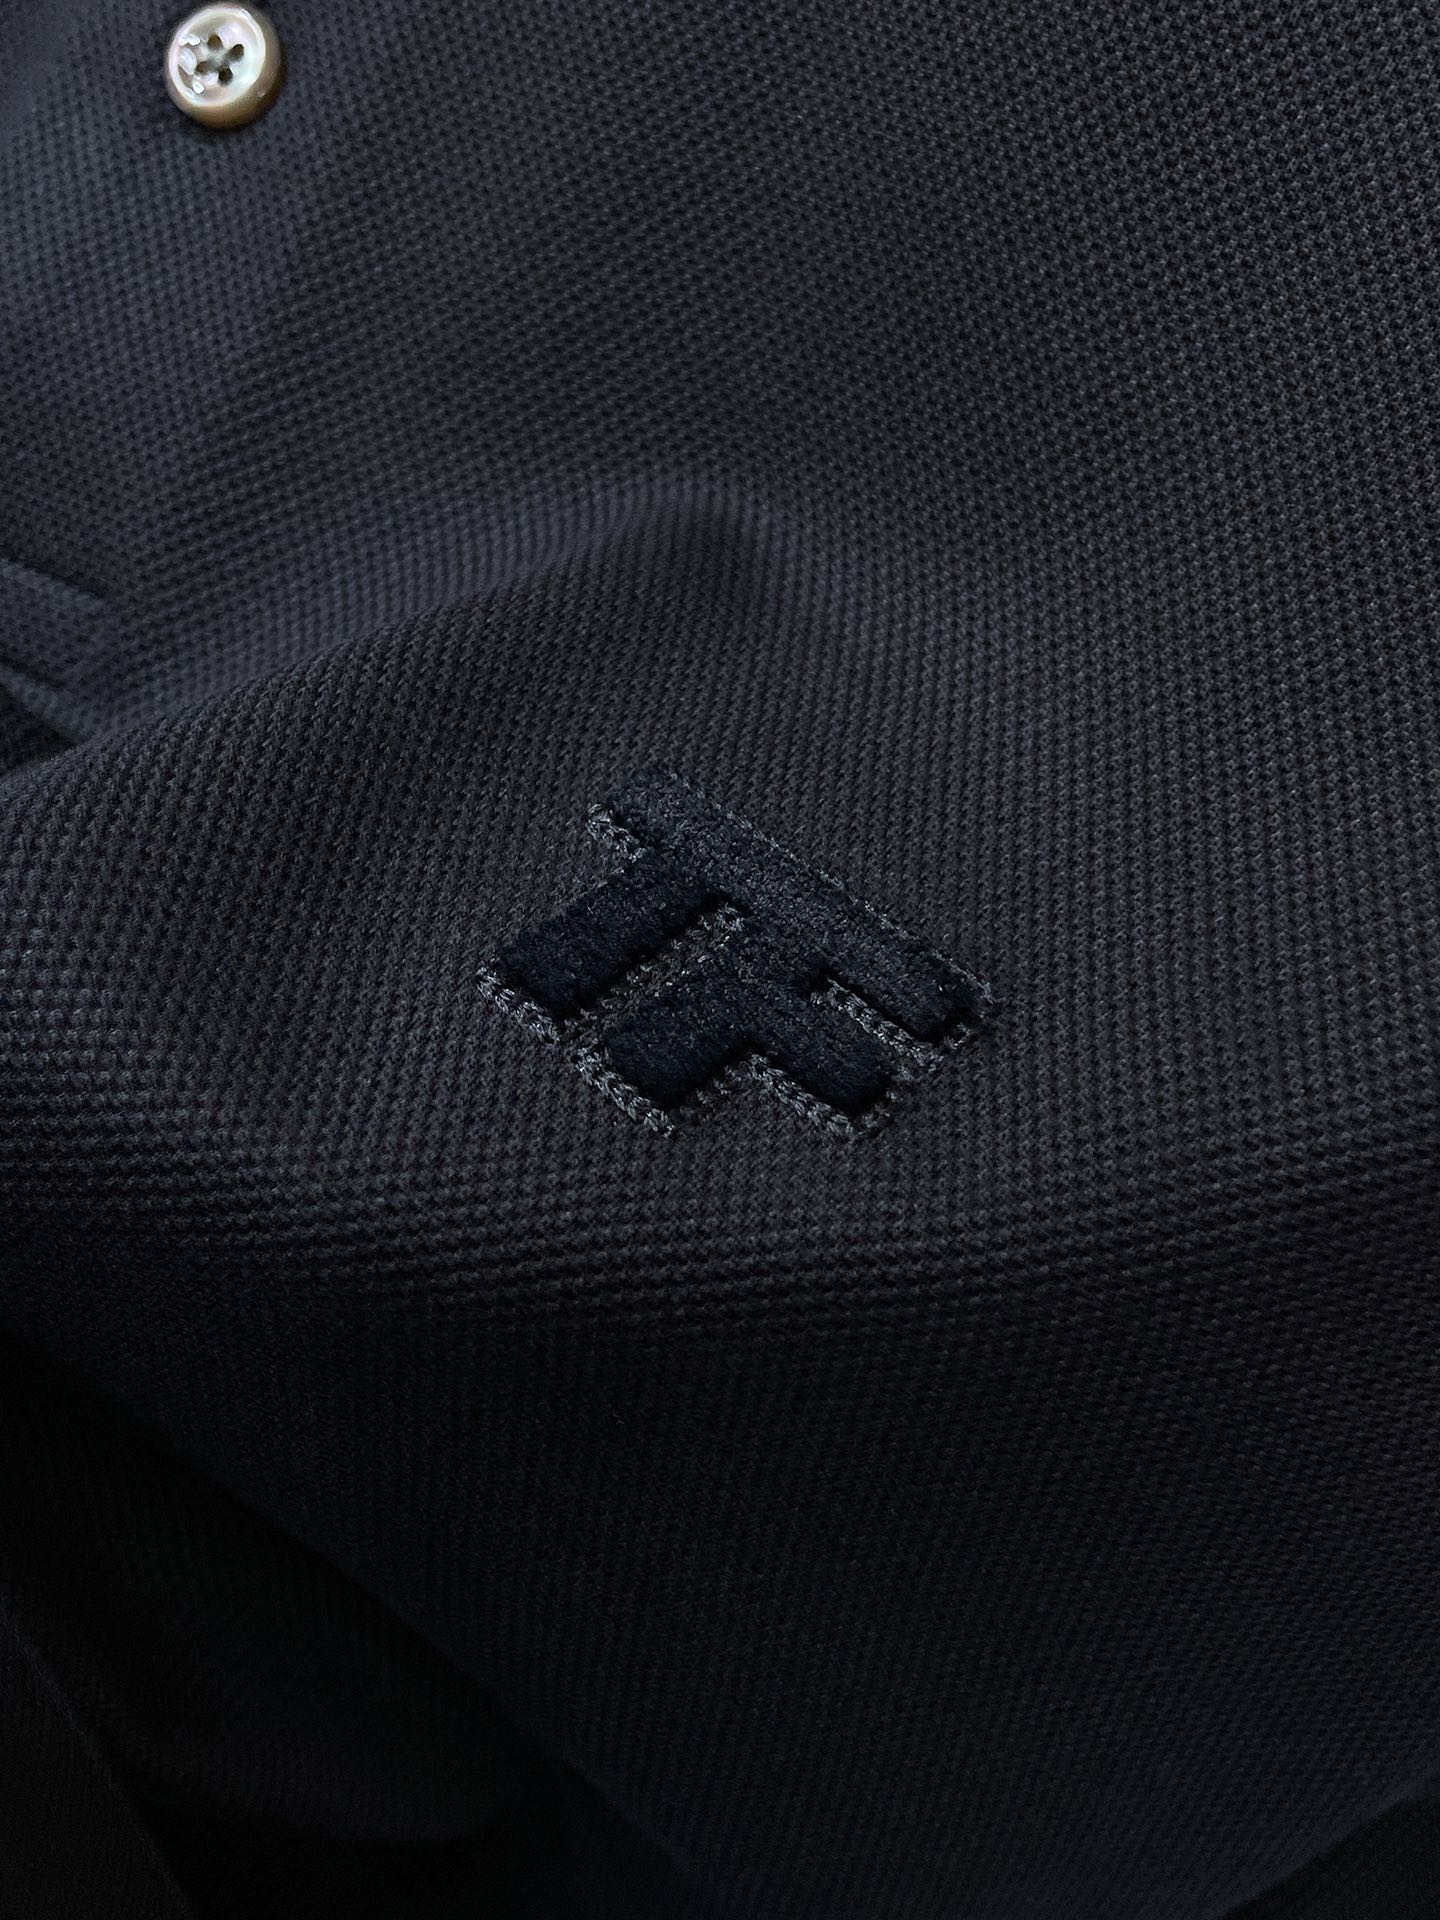 TF2024夏季新款休闲短袖翻领Polo口袋购置配色设计！都市时尚简单休闲版型原汁原味的代工厂定制渠道让